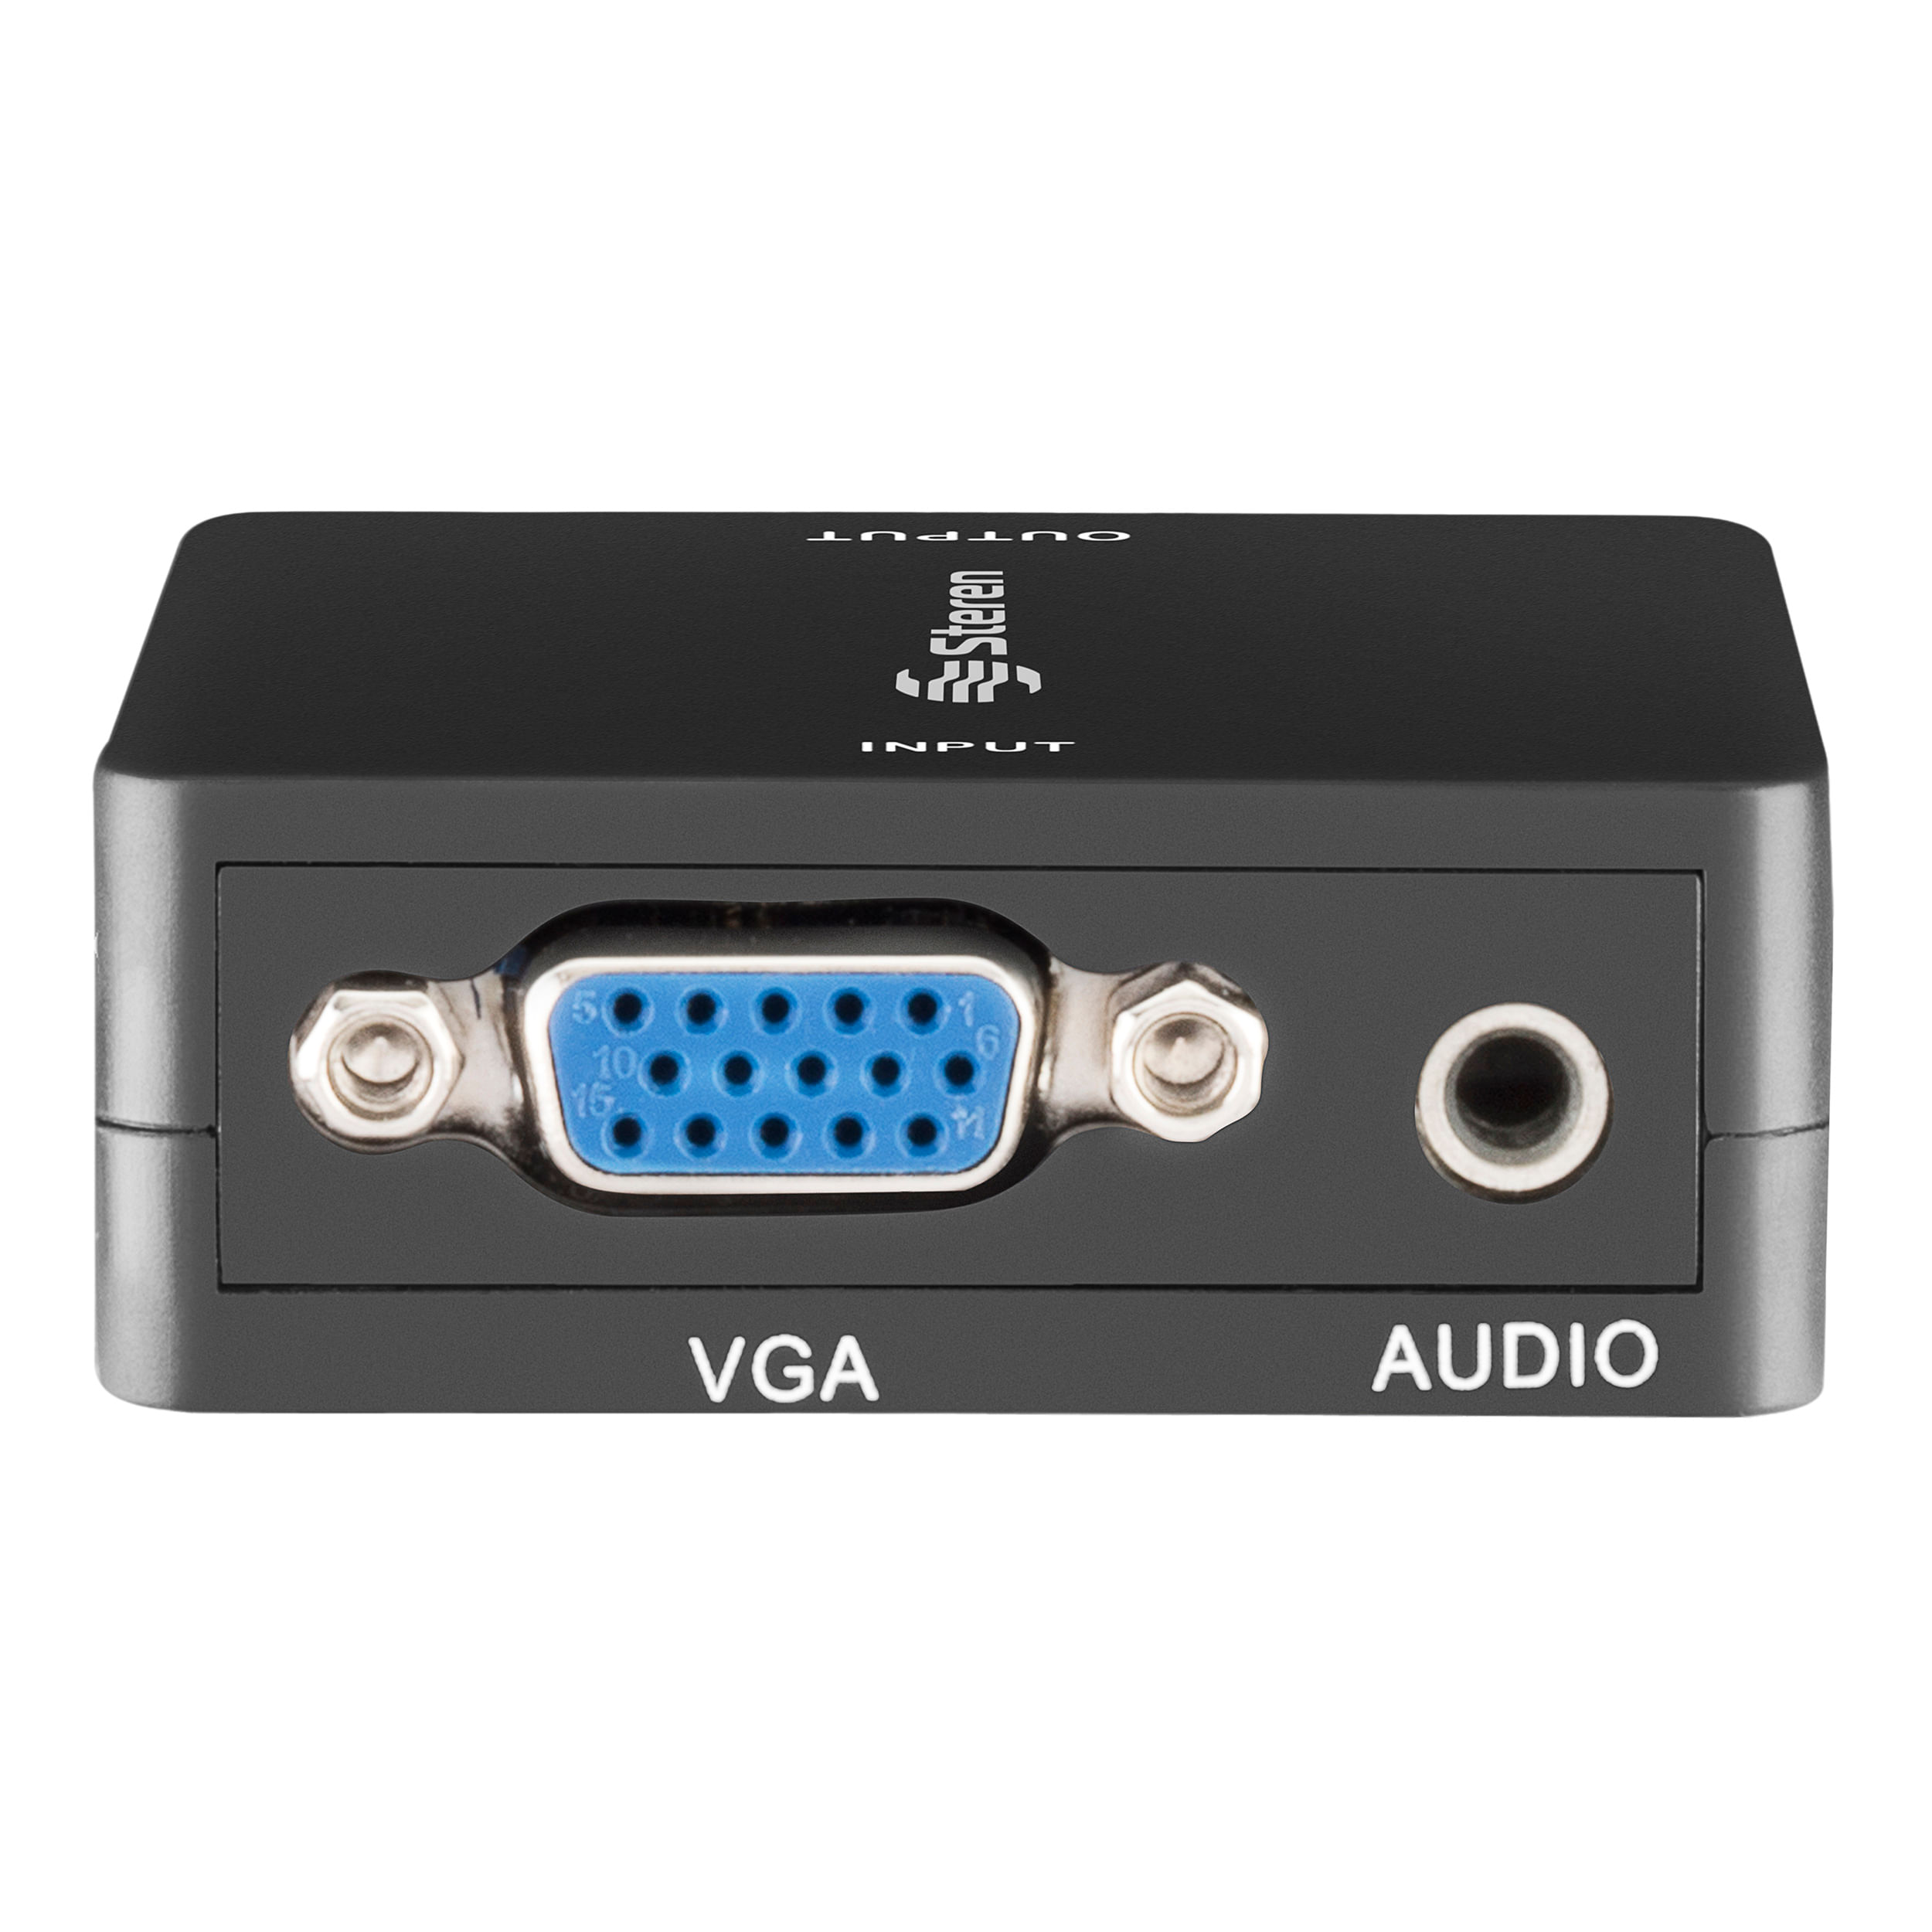 Adaptador Hdmi A VGA con salida de audio Steren